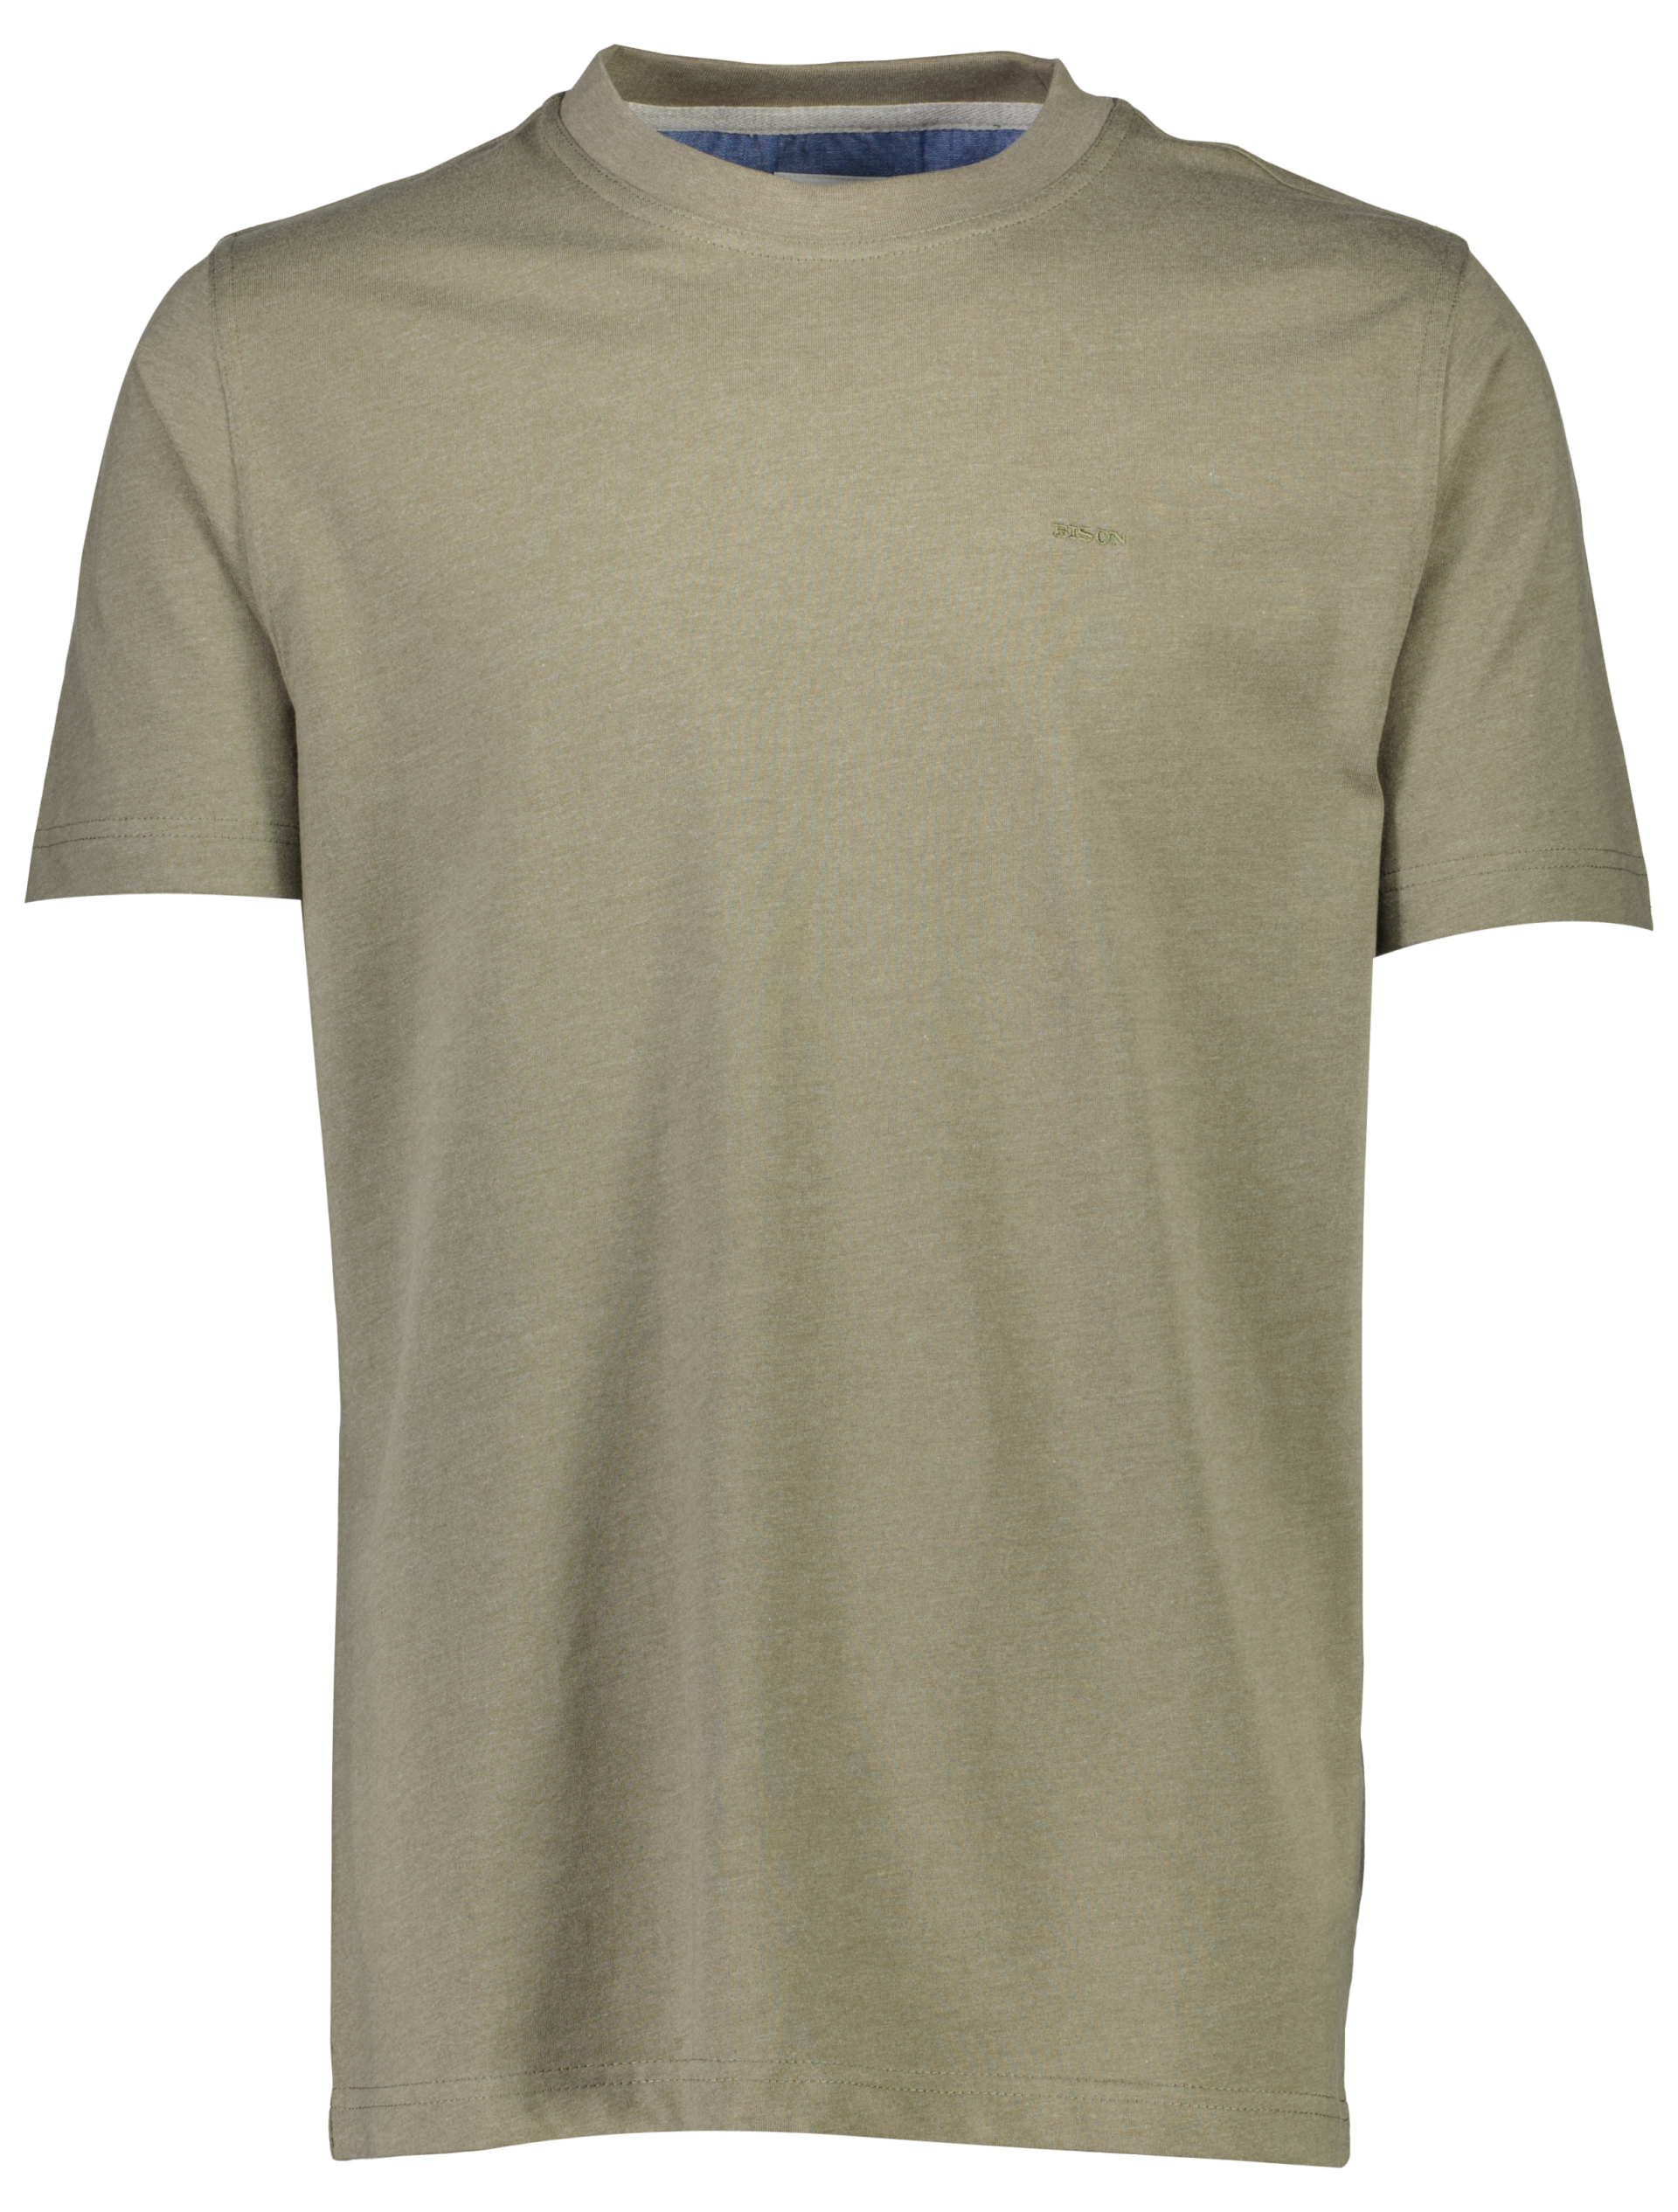 Bison T-shirt grön / army mel